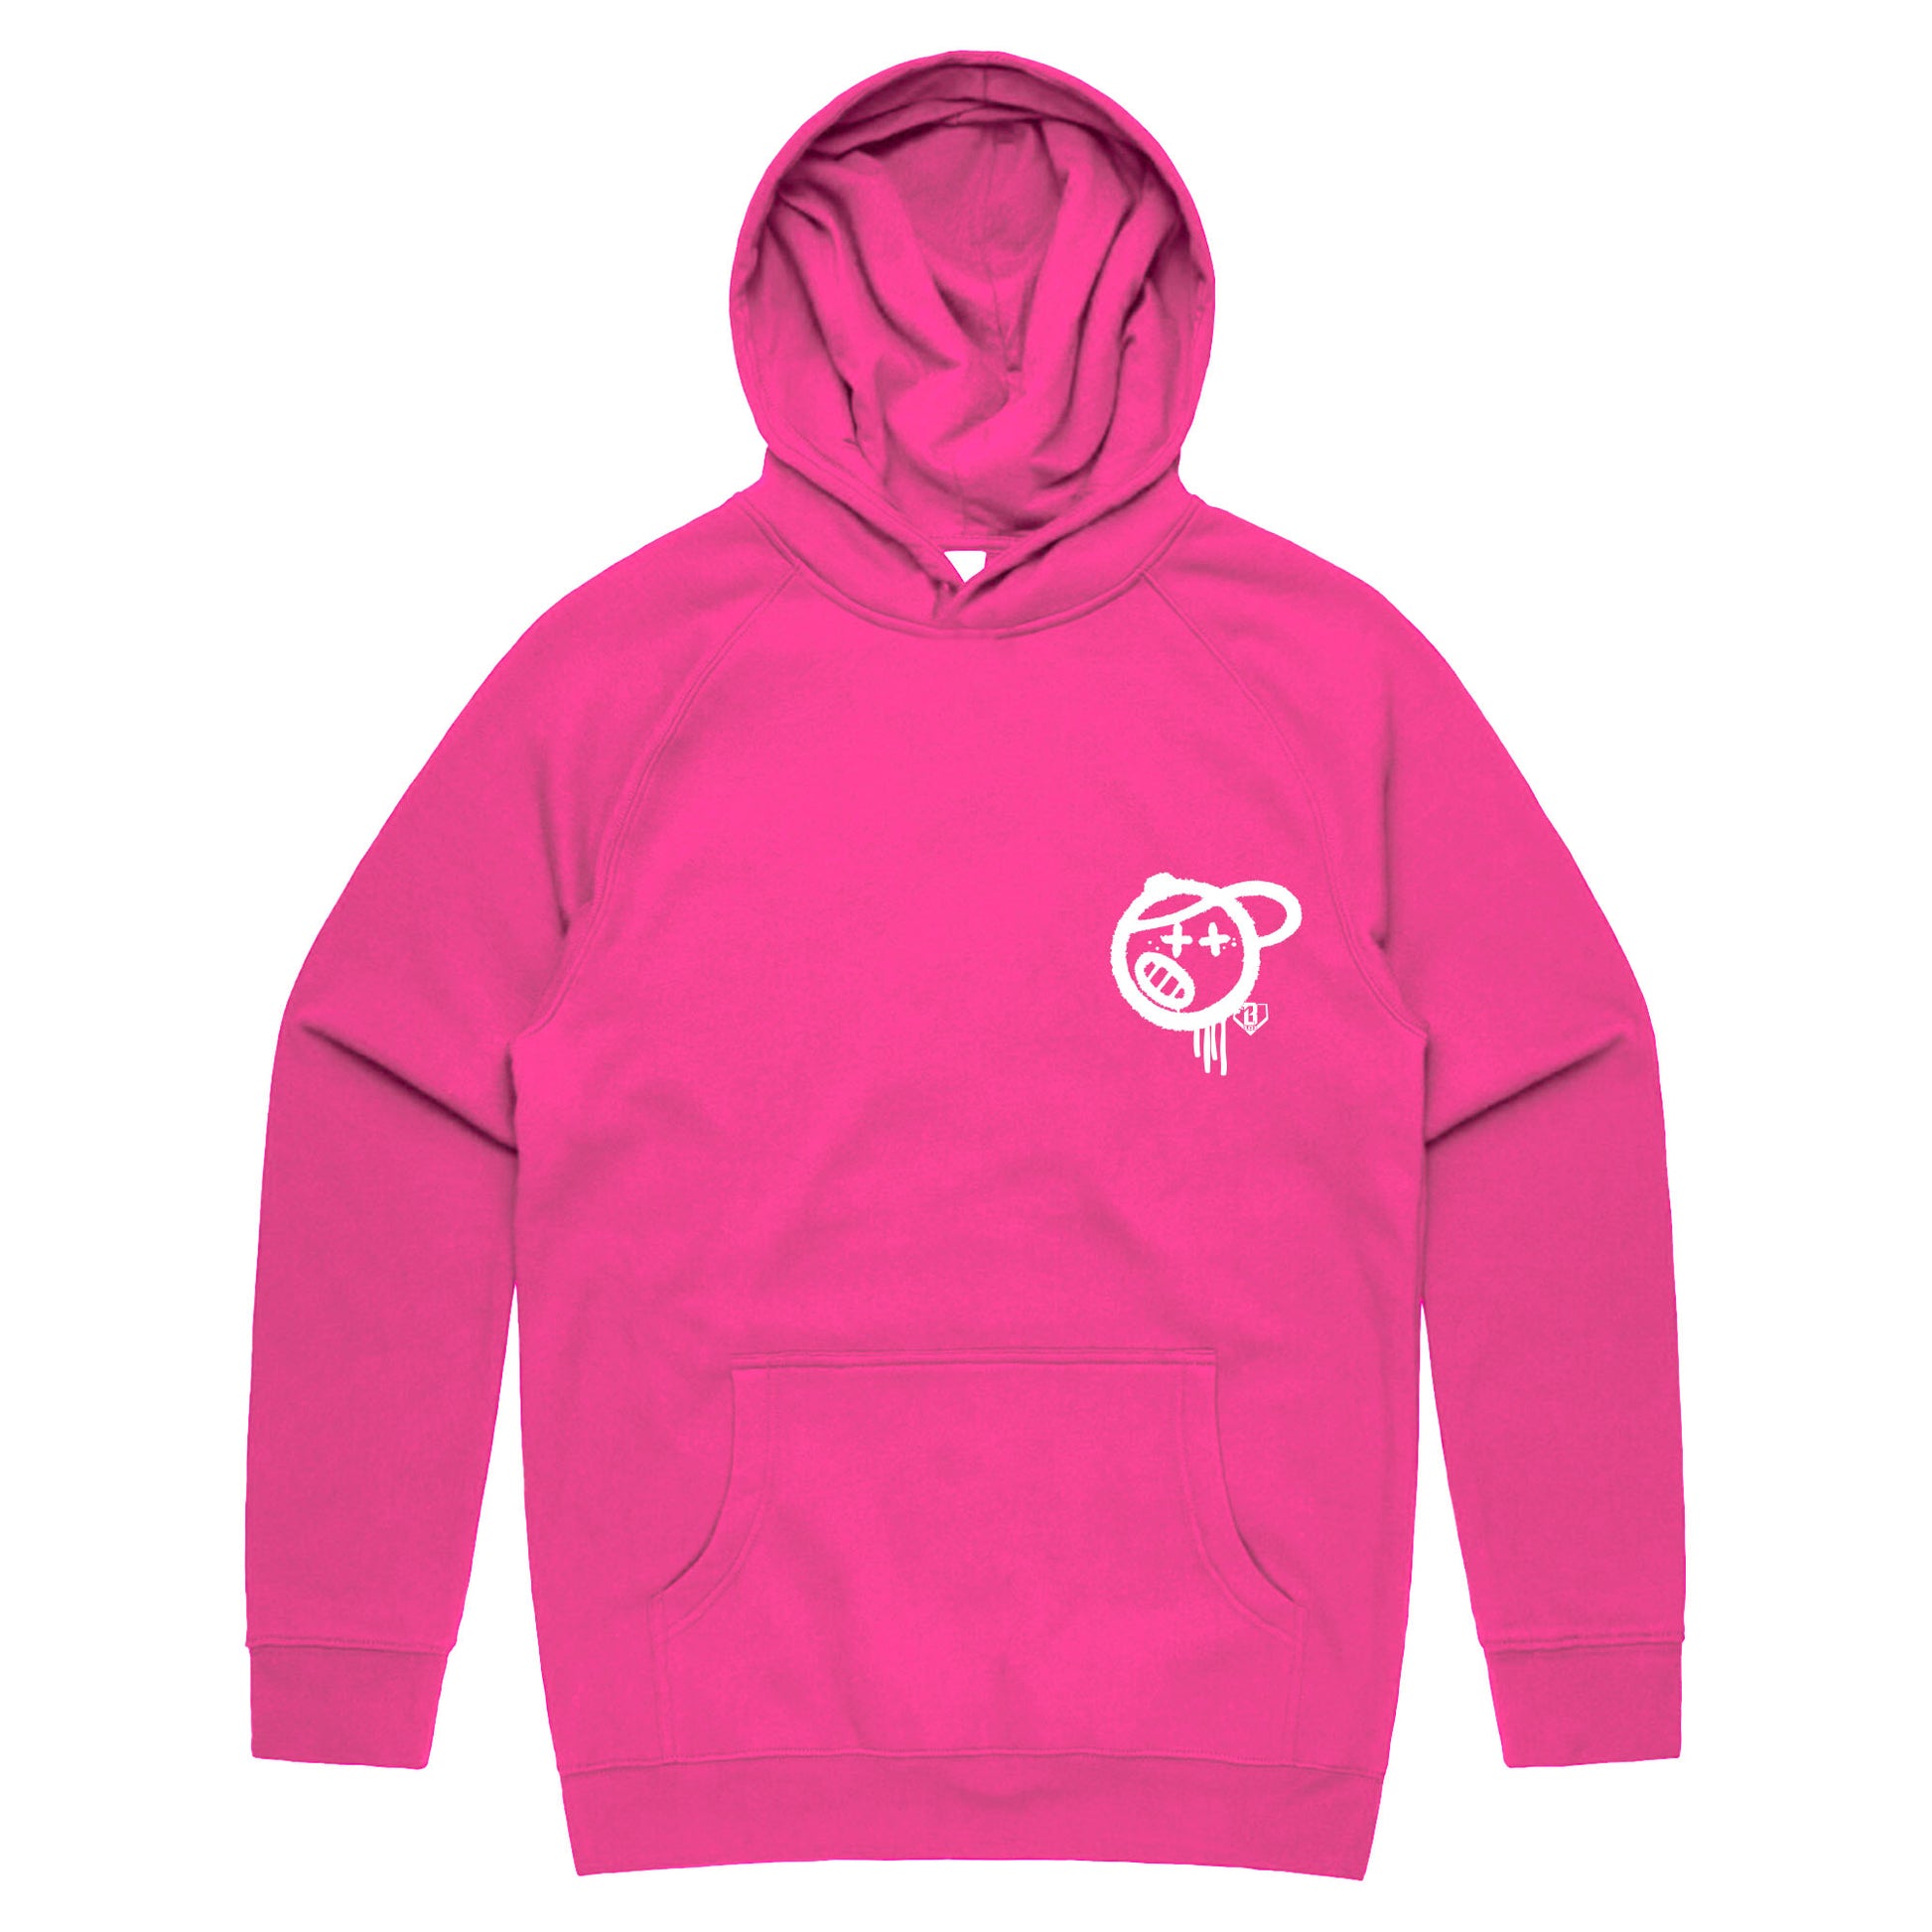 vandal hoodie, pink hoodie